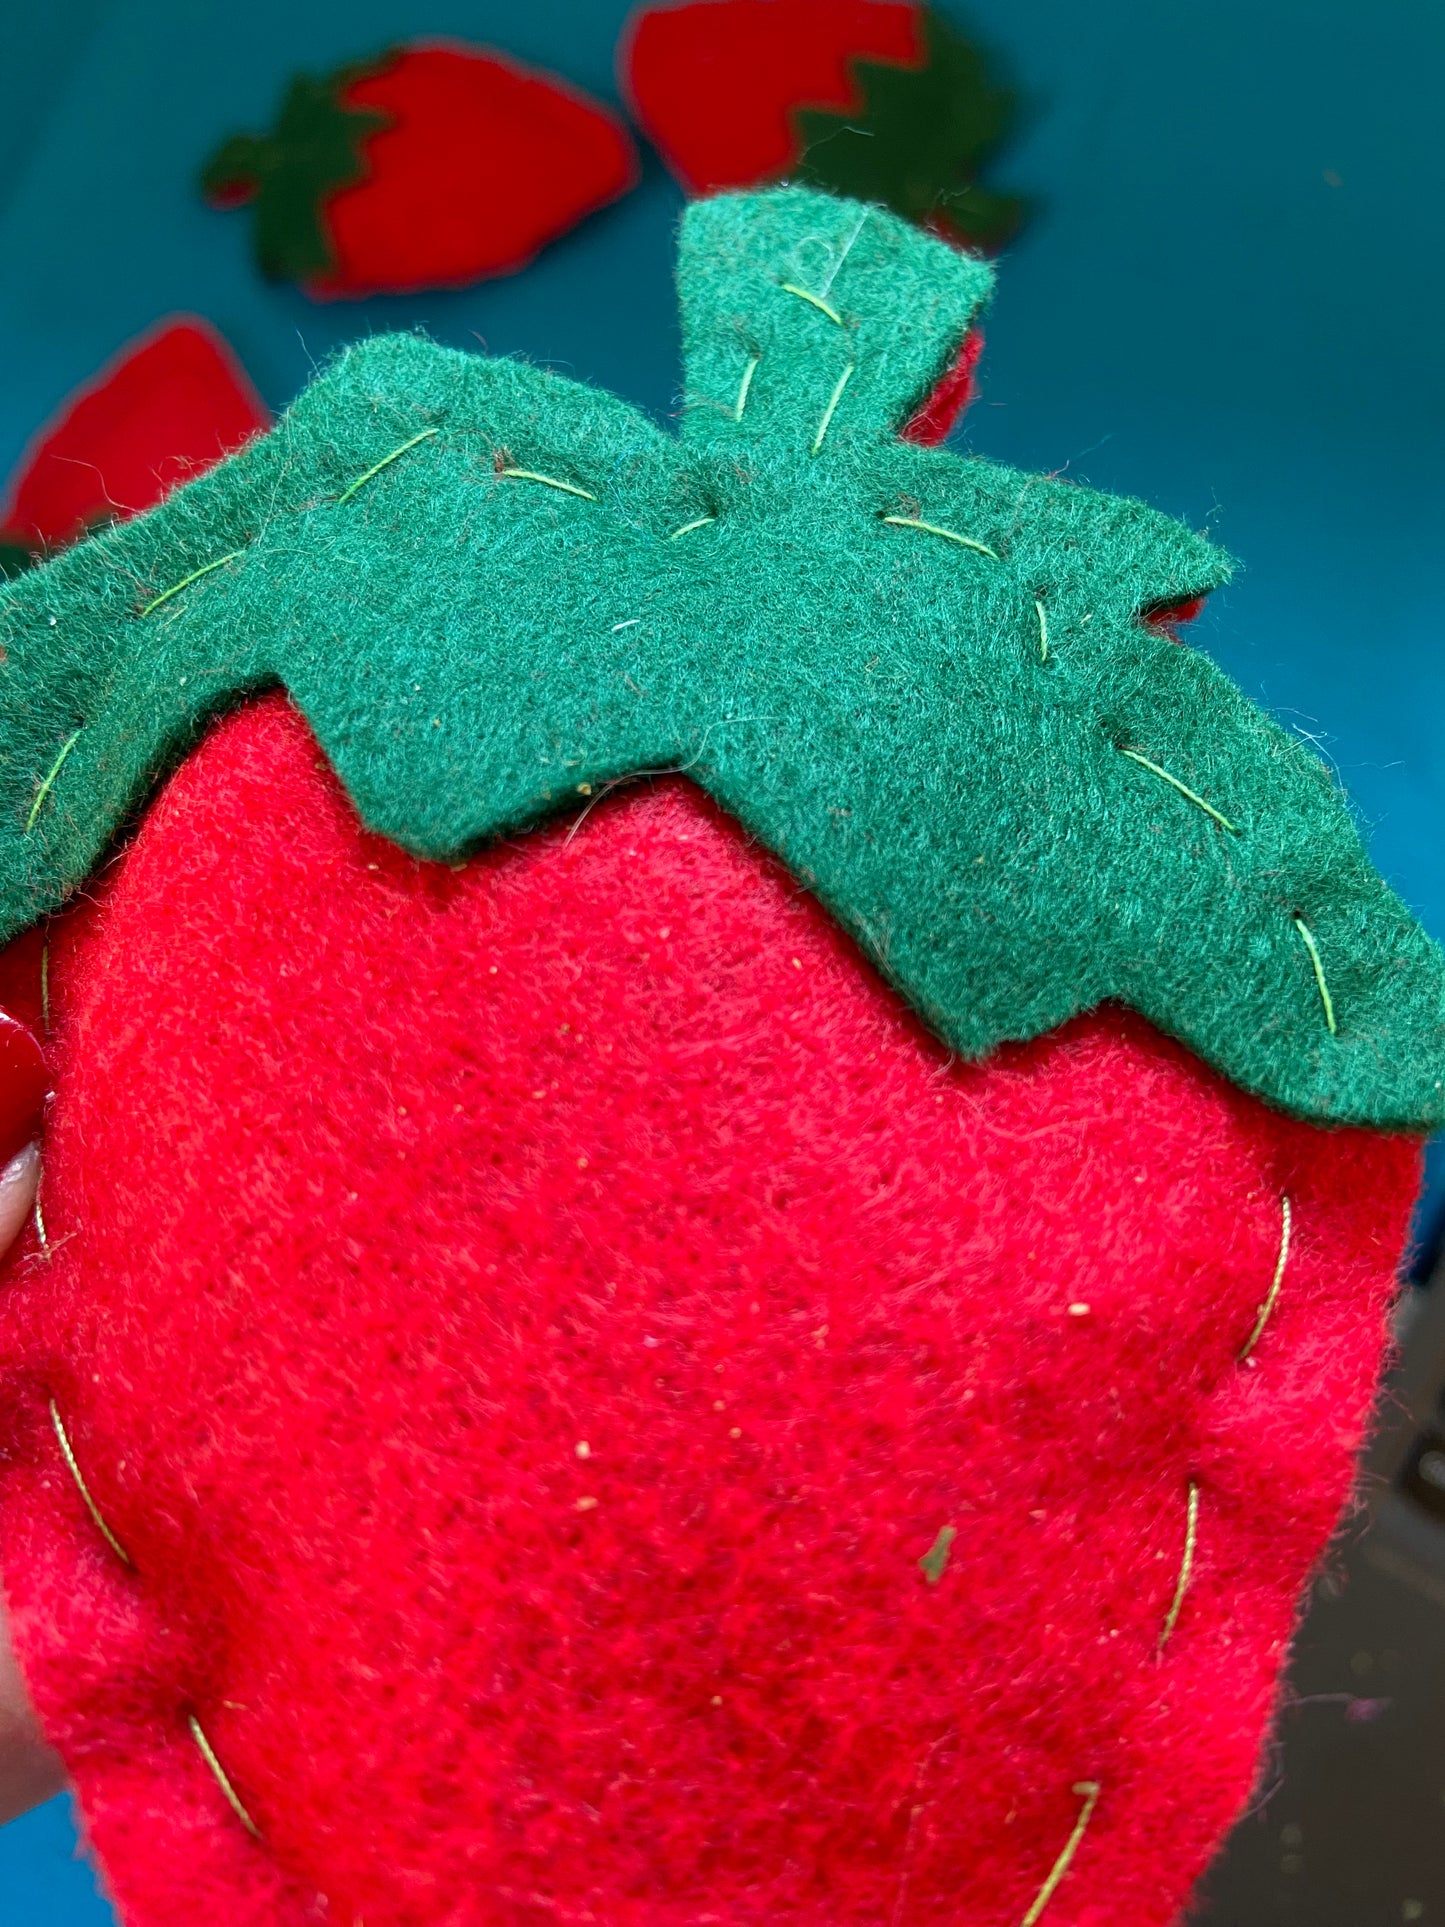 Strawberry catnip toy